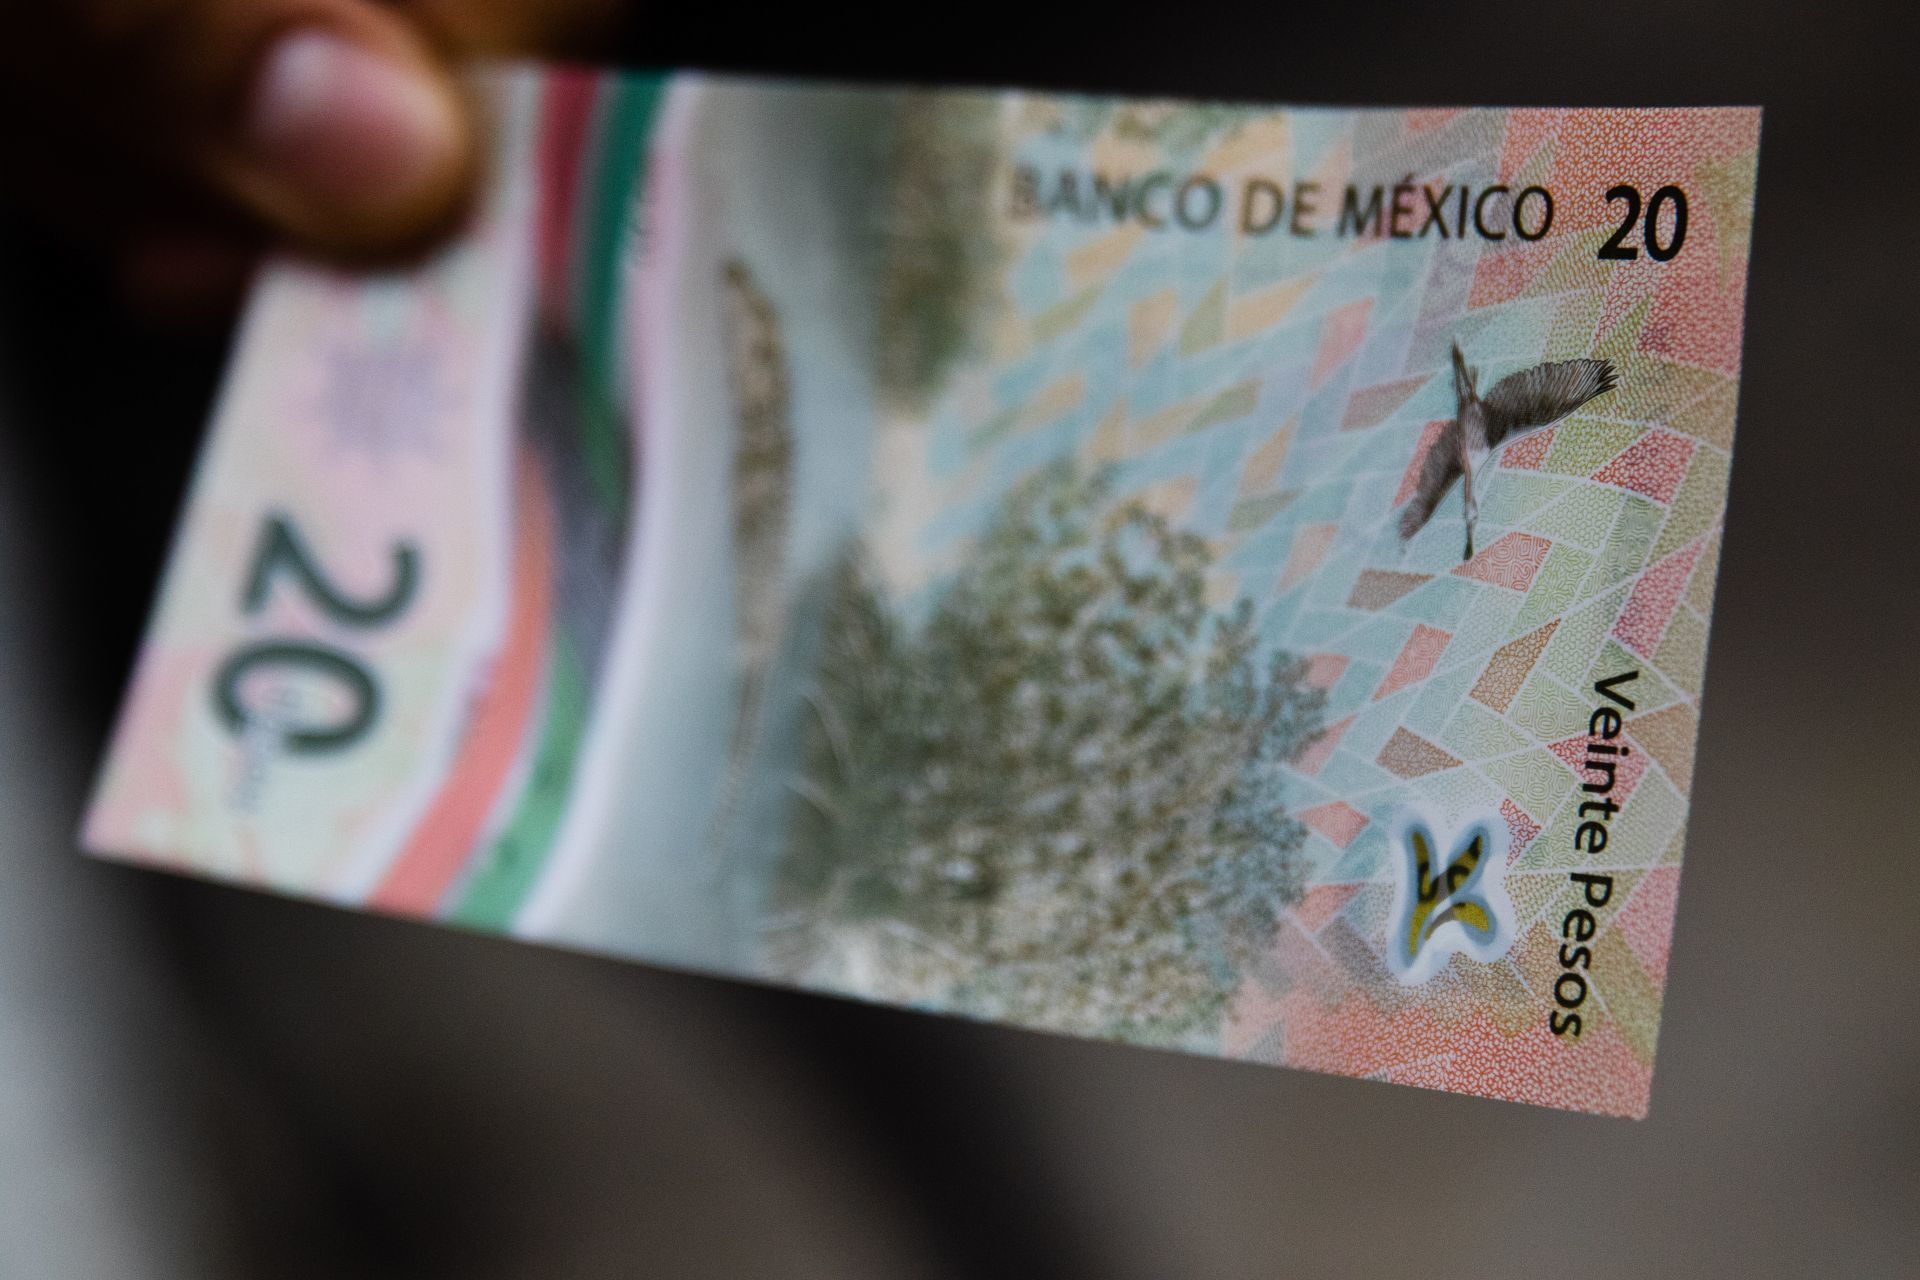 Ya esta circulando el nuevo billete de 20 pesos que muestra en su cara frontal al Ejército de la Tres Garantías entrando a la Ciudad de México que culminaba la Independencia de México en 1821.